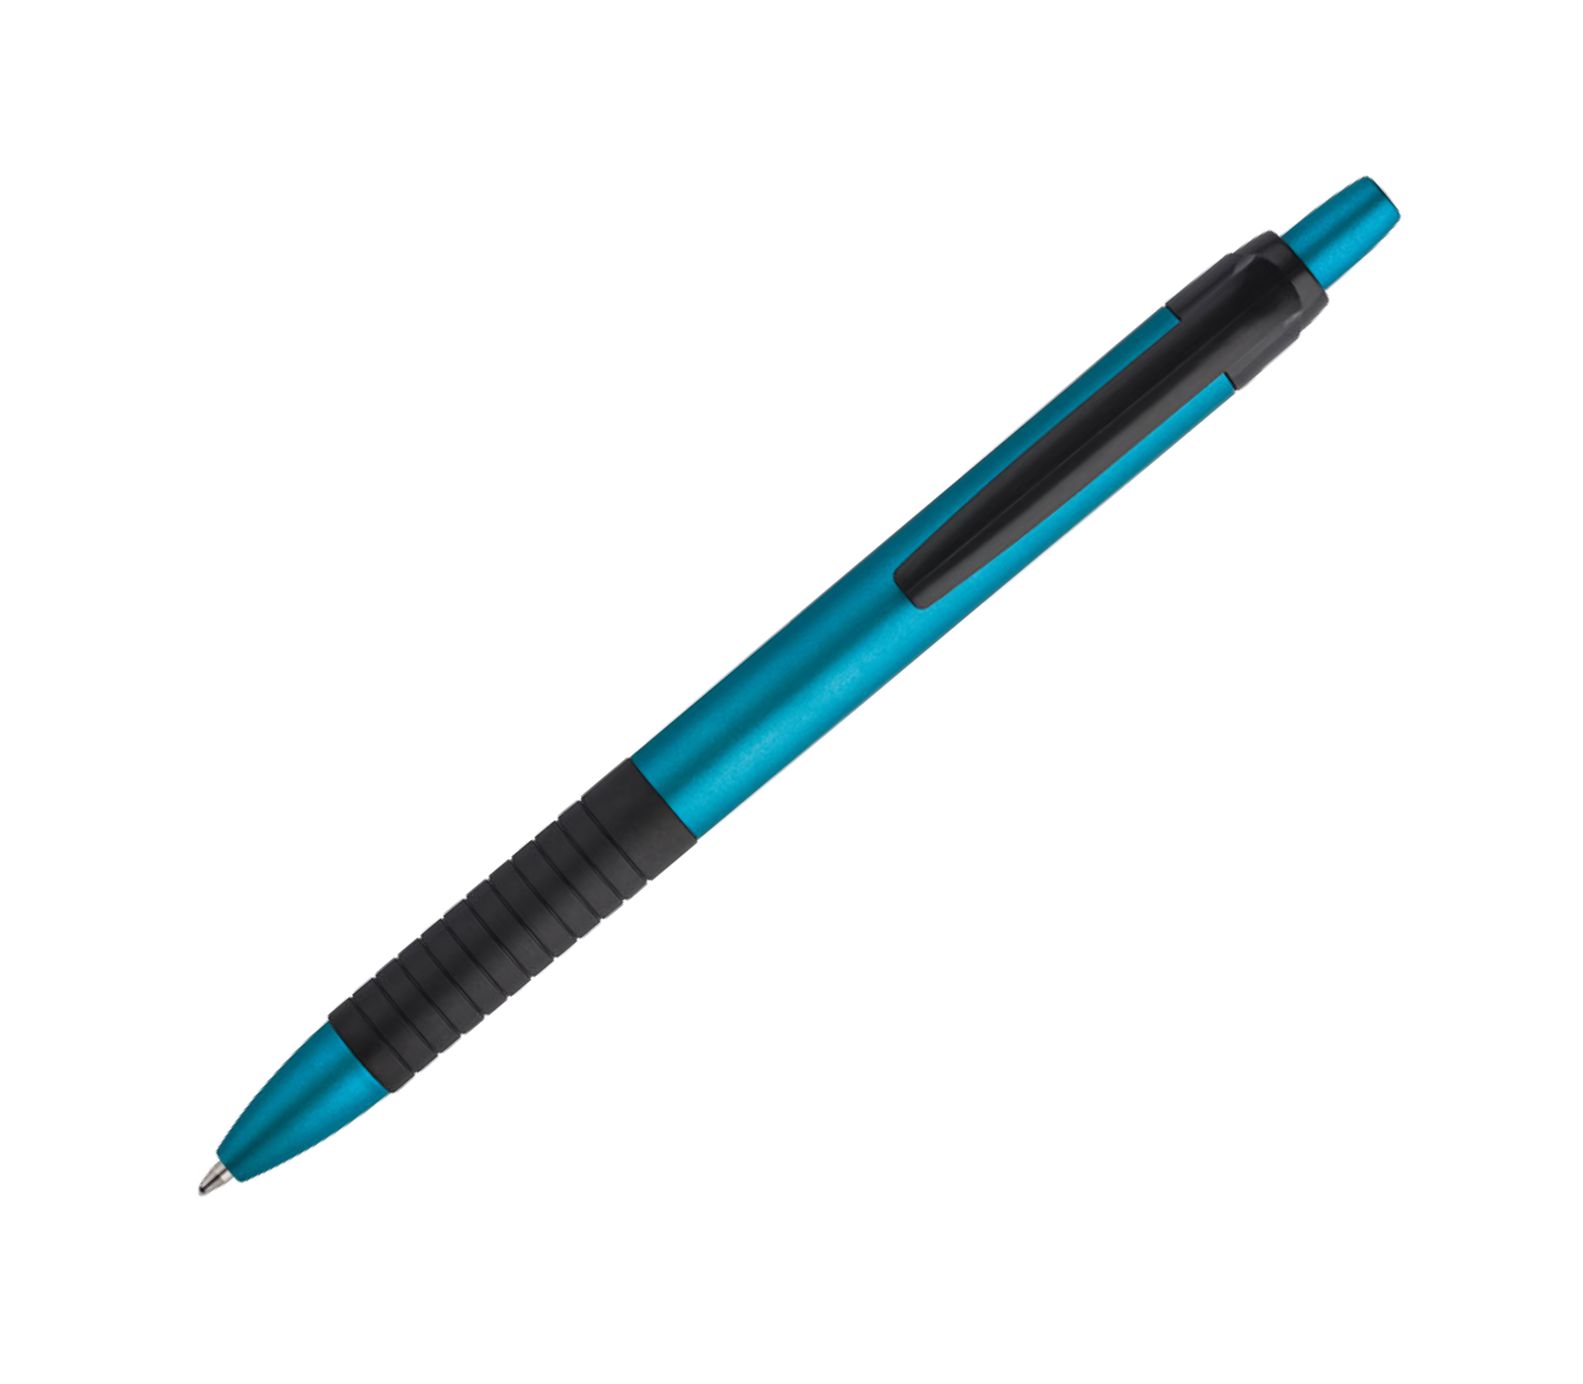 Kemijska olovka UN633 plava